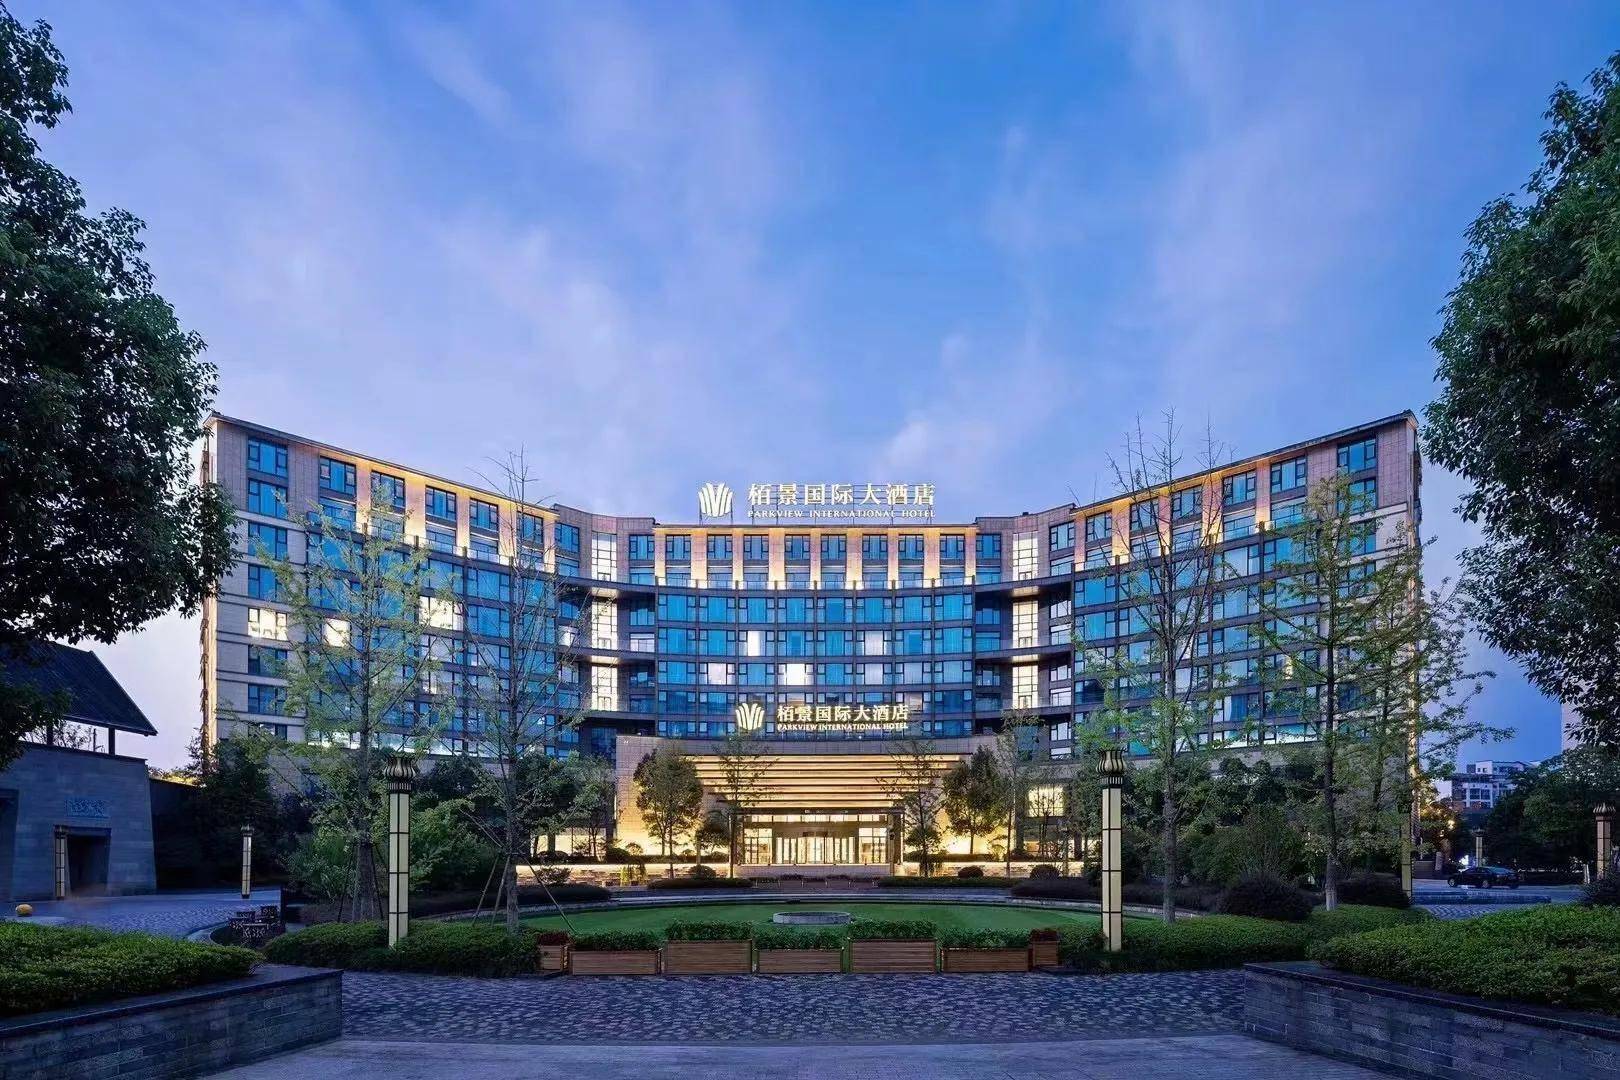 2020年7月,黄山栢景国际大酒店华丽绽放,成为国际化旅游城市黄山市最